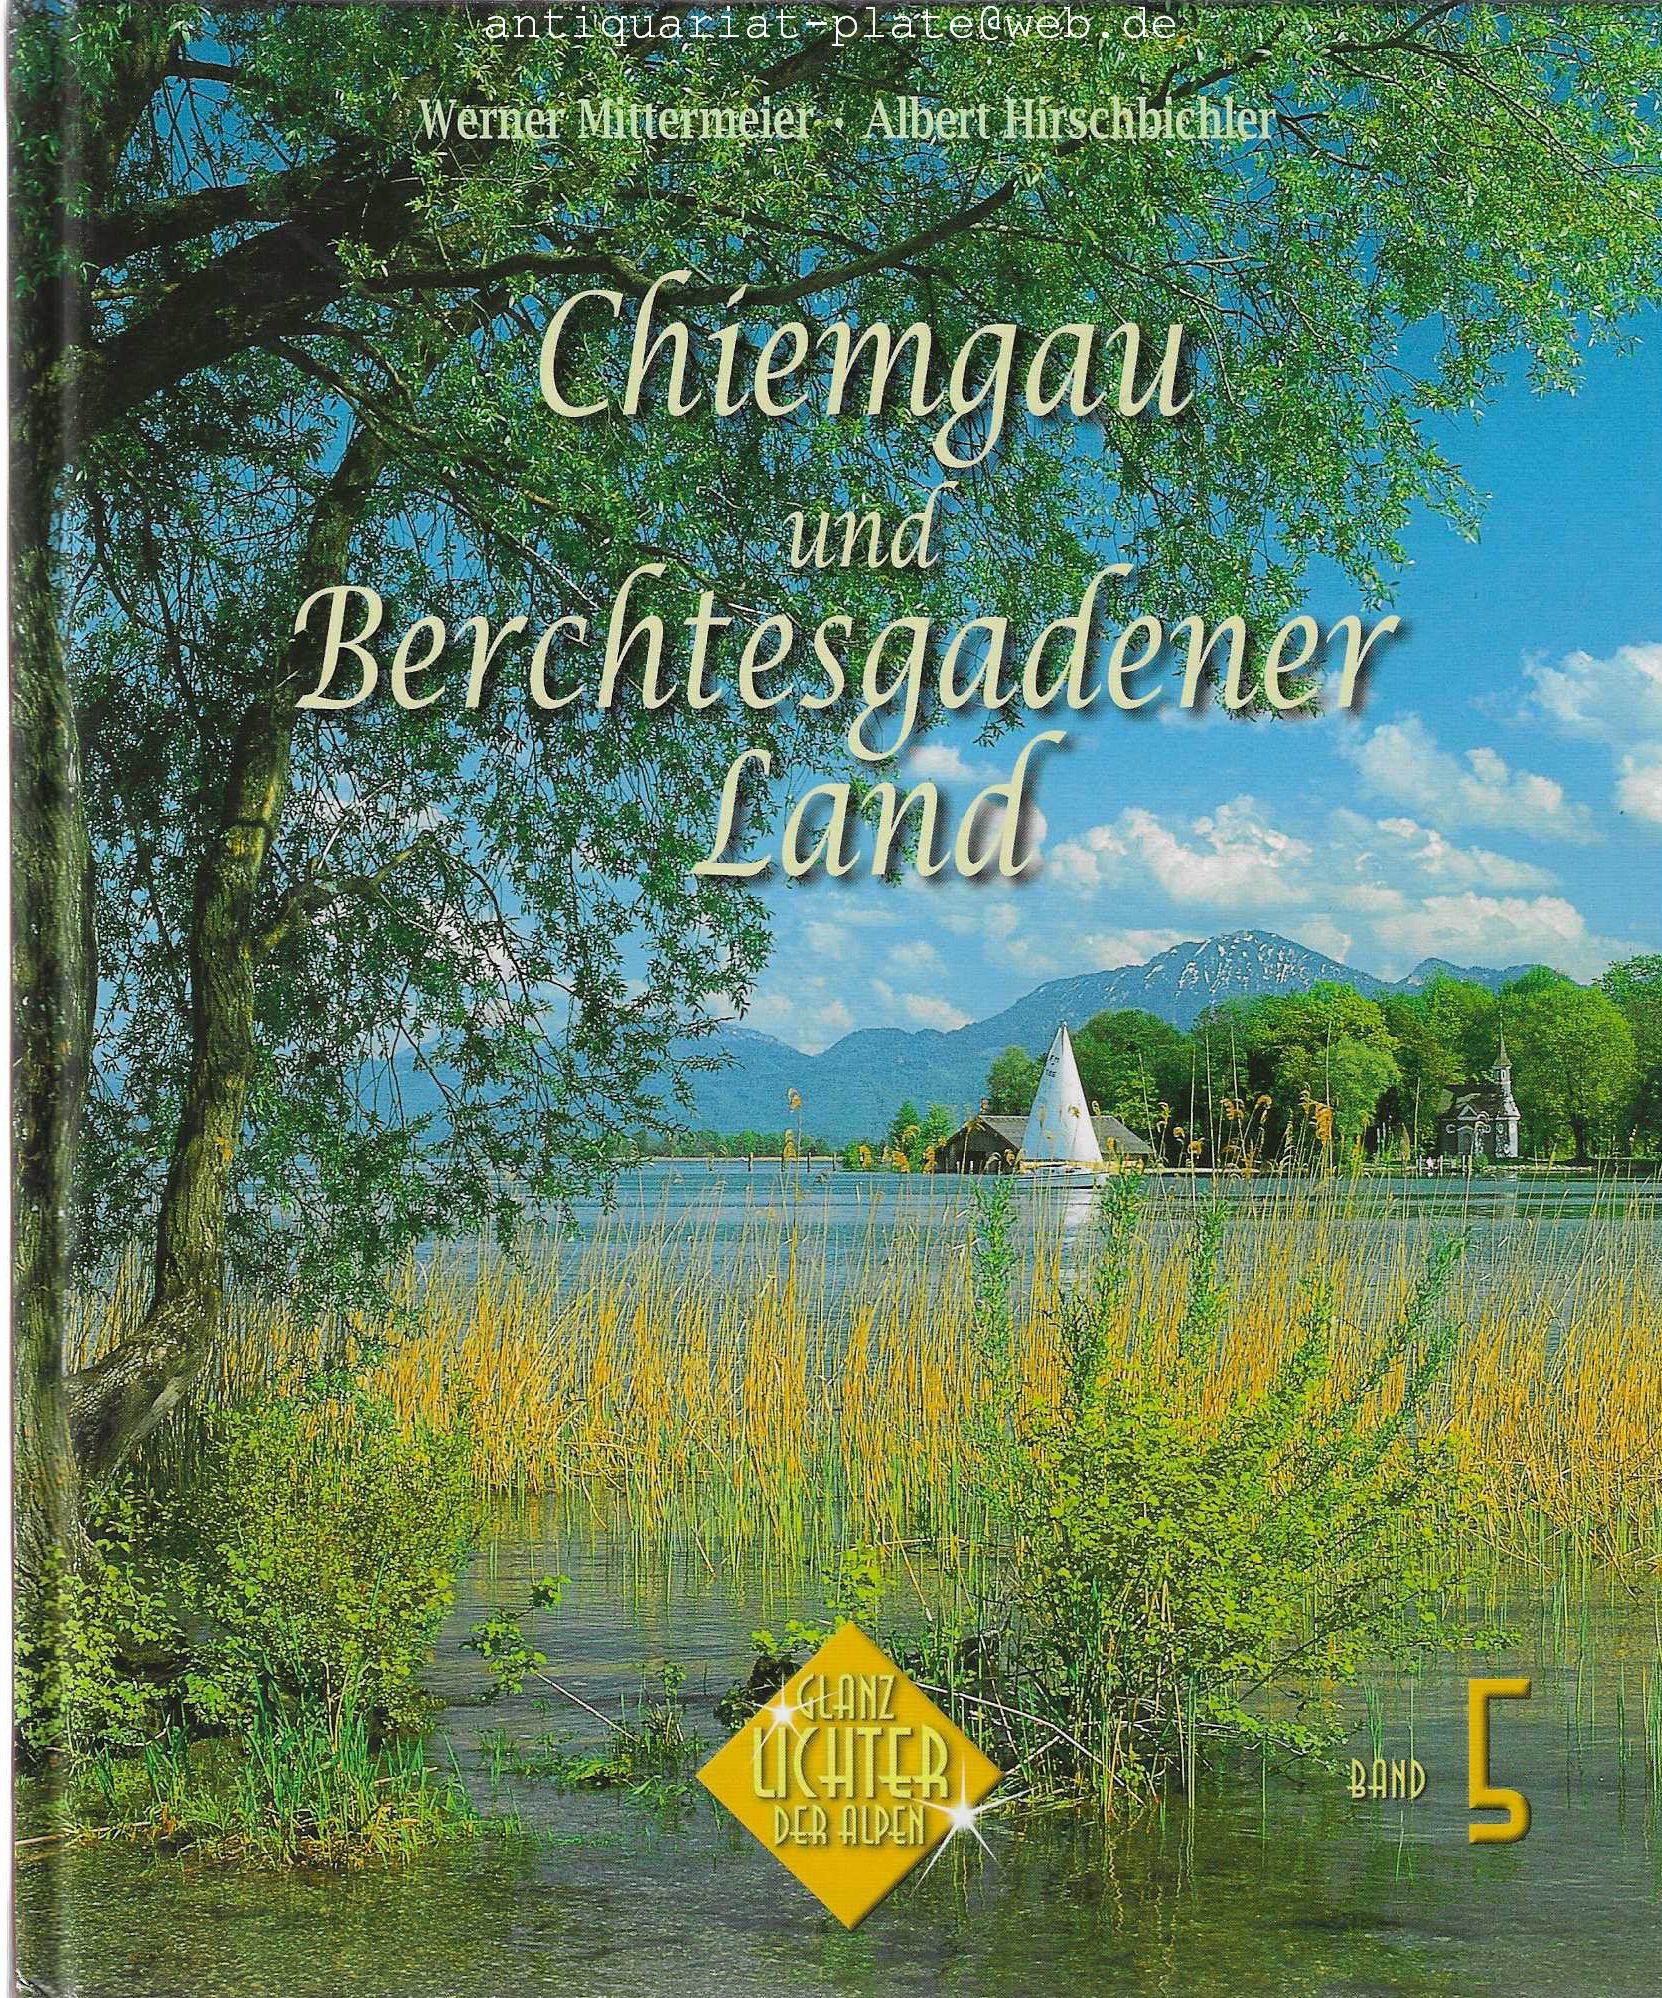 Chiemgau und Berchtesgadener Land. Glanzlichter der Alpen. Band 5. - Mittermeier, Werner und Albert Hirschbichler